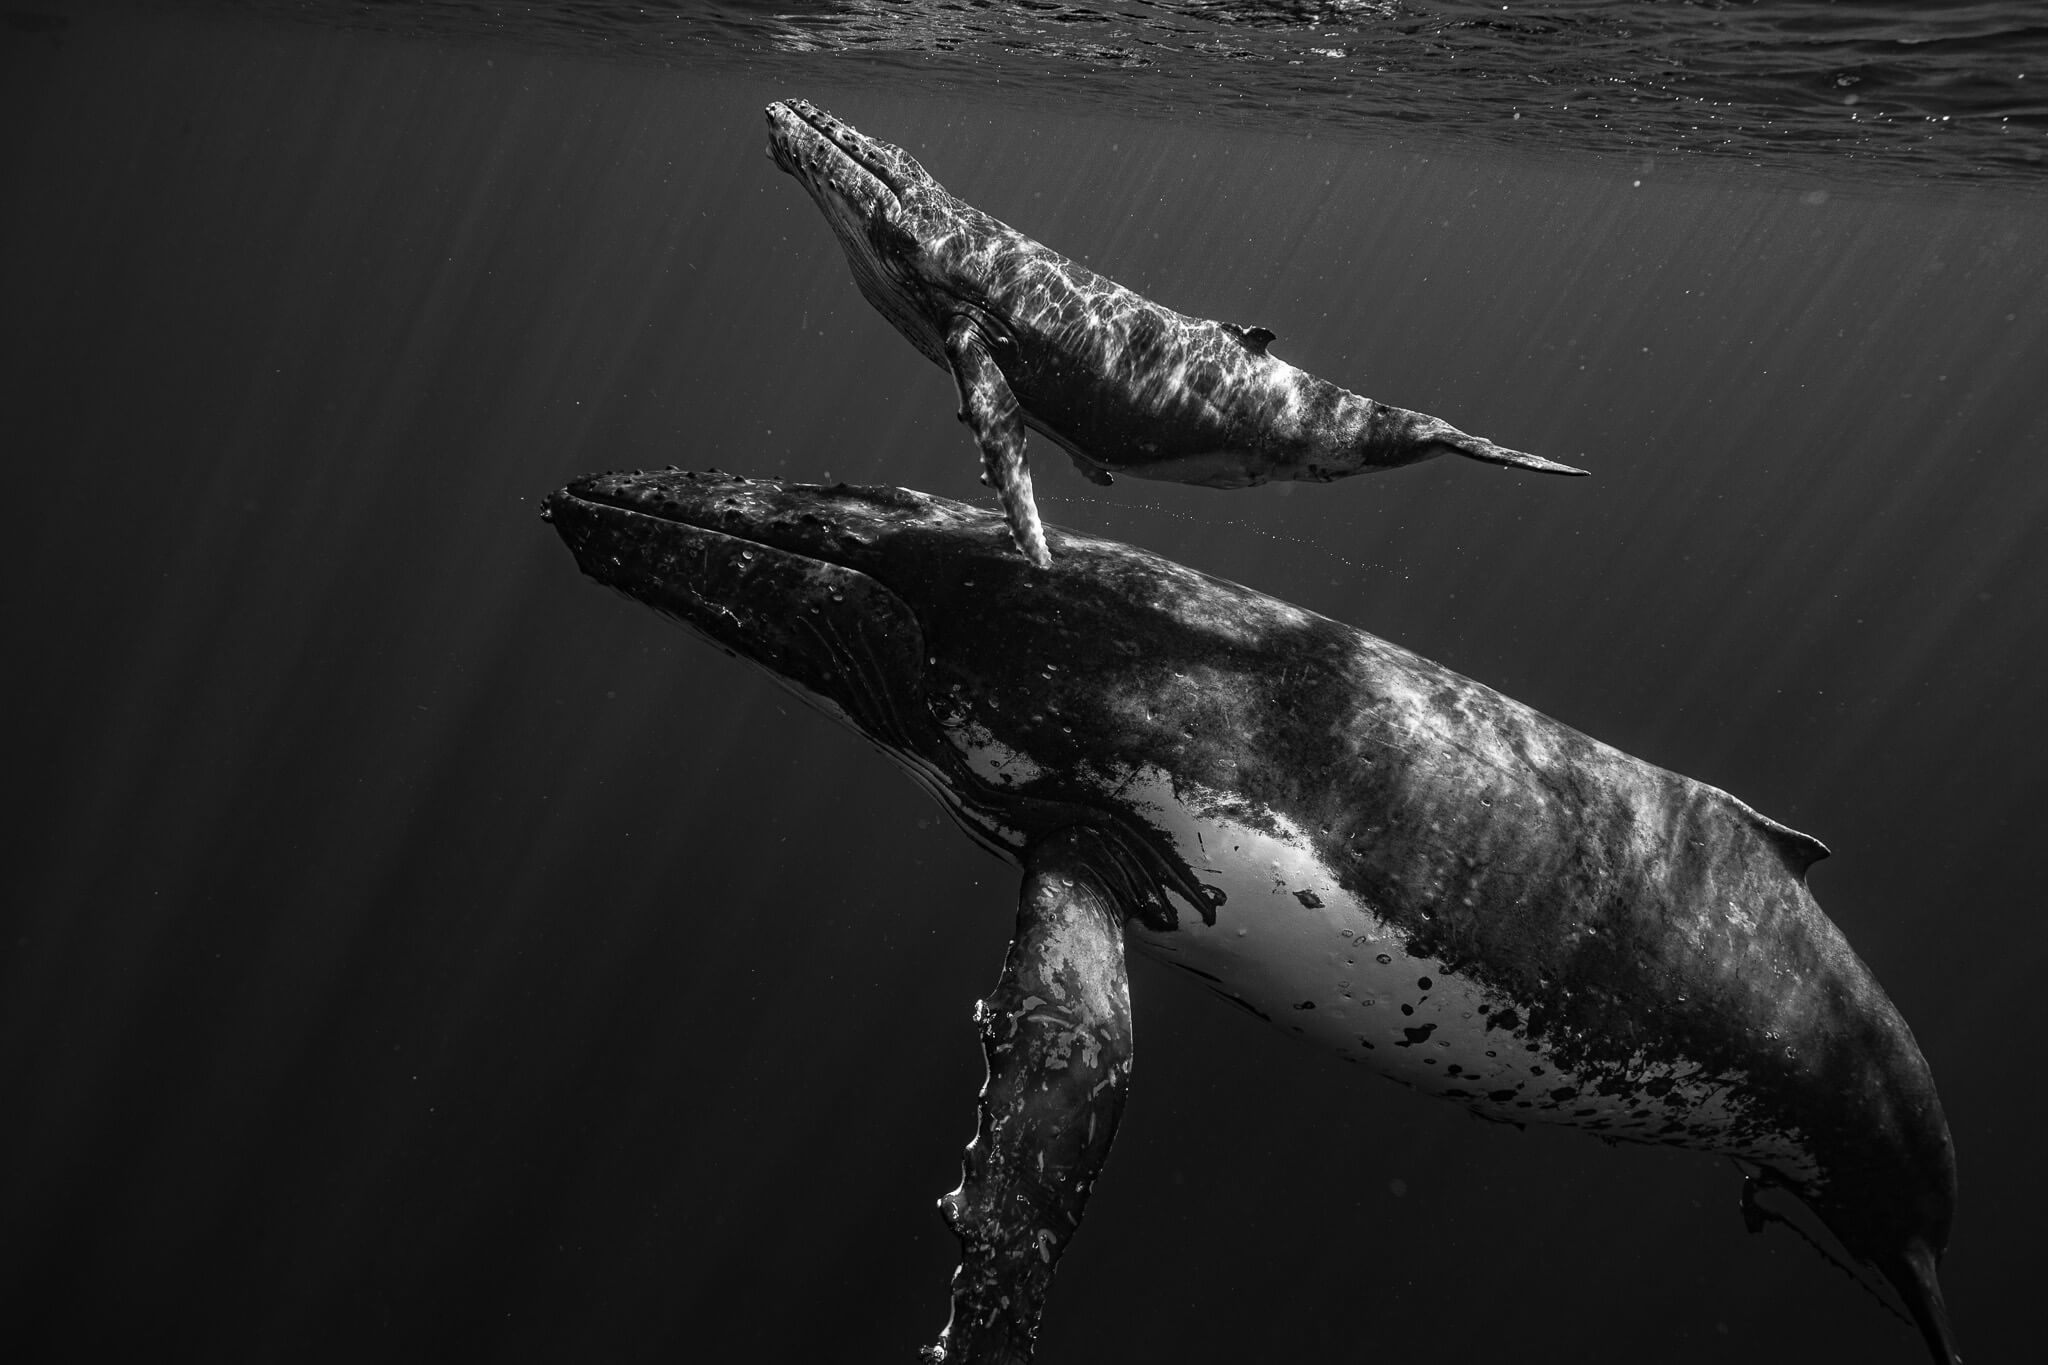 Photographie animalière de baleines dans leur état sauvage